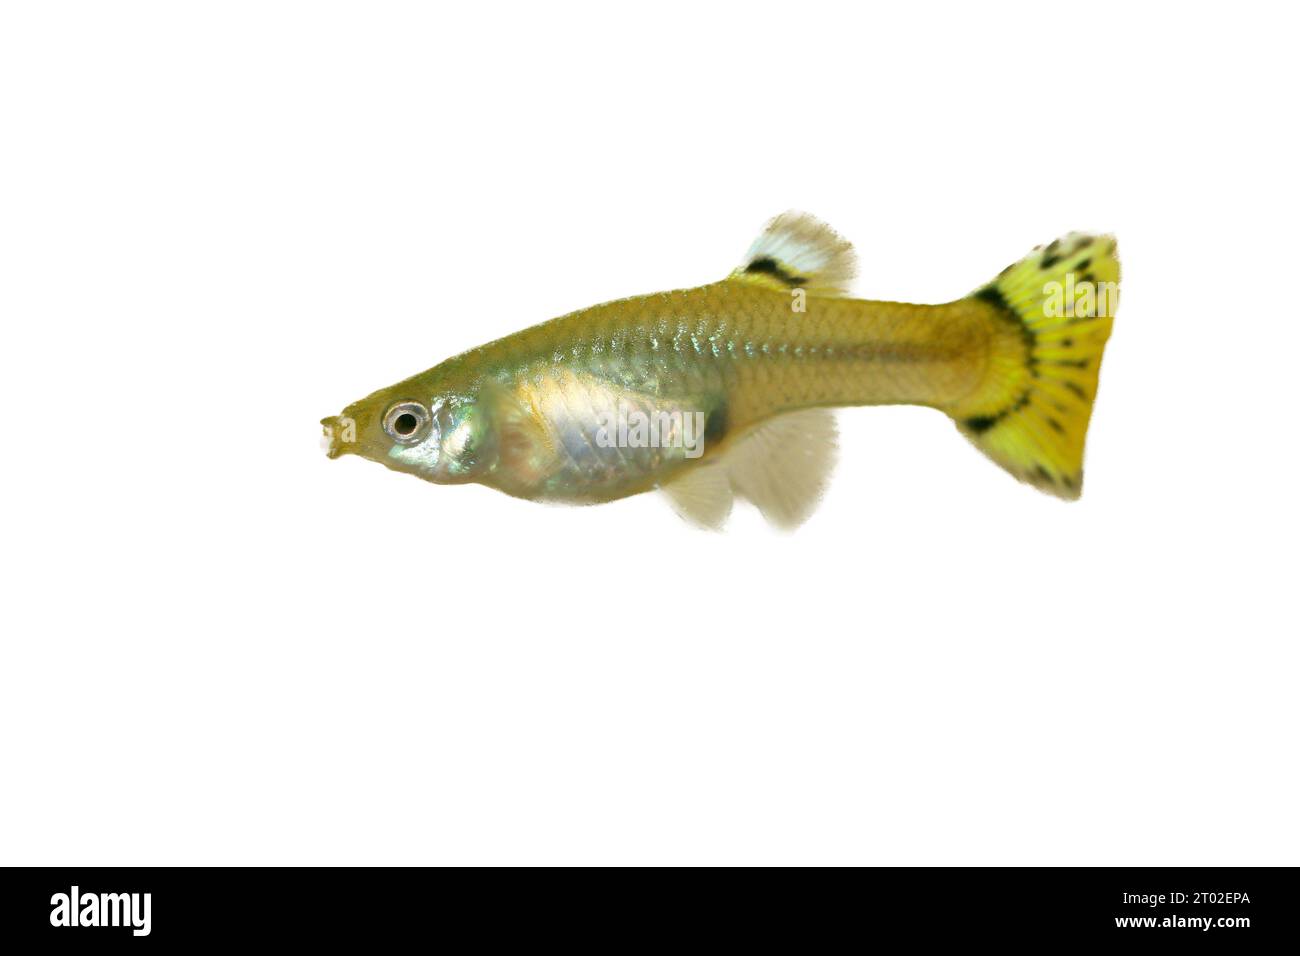 Une GuppY femelle (Poecilia reticulata), un poisson d'aquarium d'eau douce populaire Banque D'Images